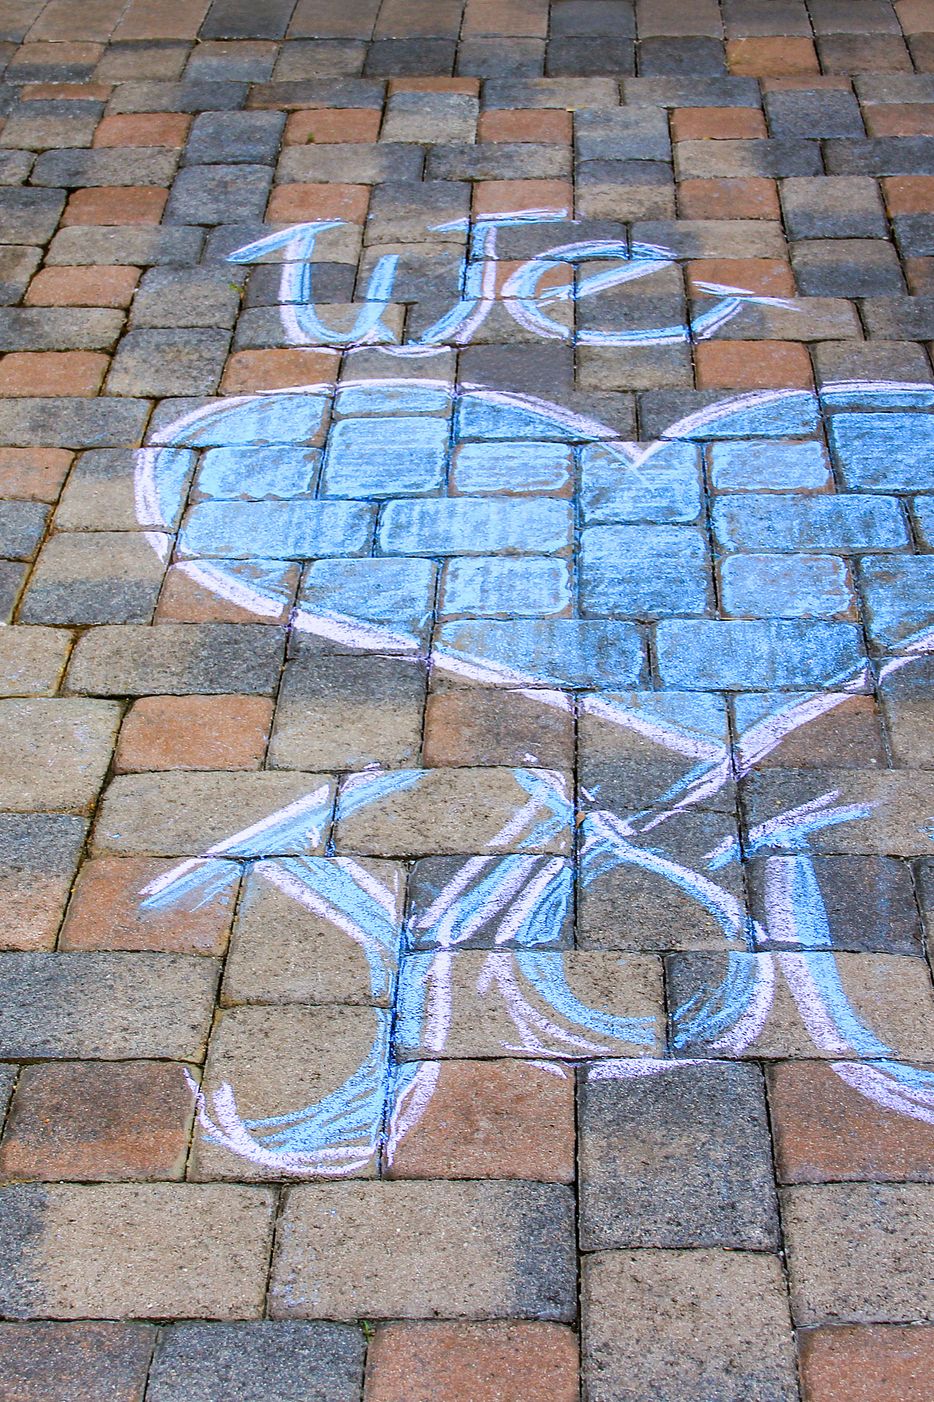 Sidewalk pavement with chalk message